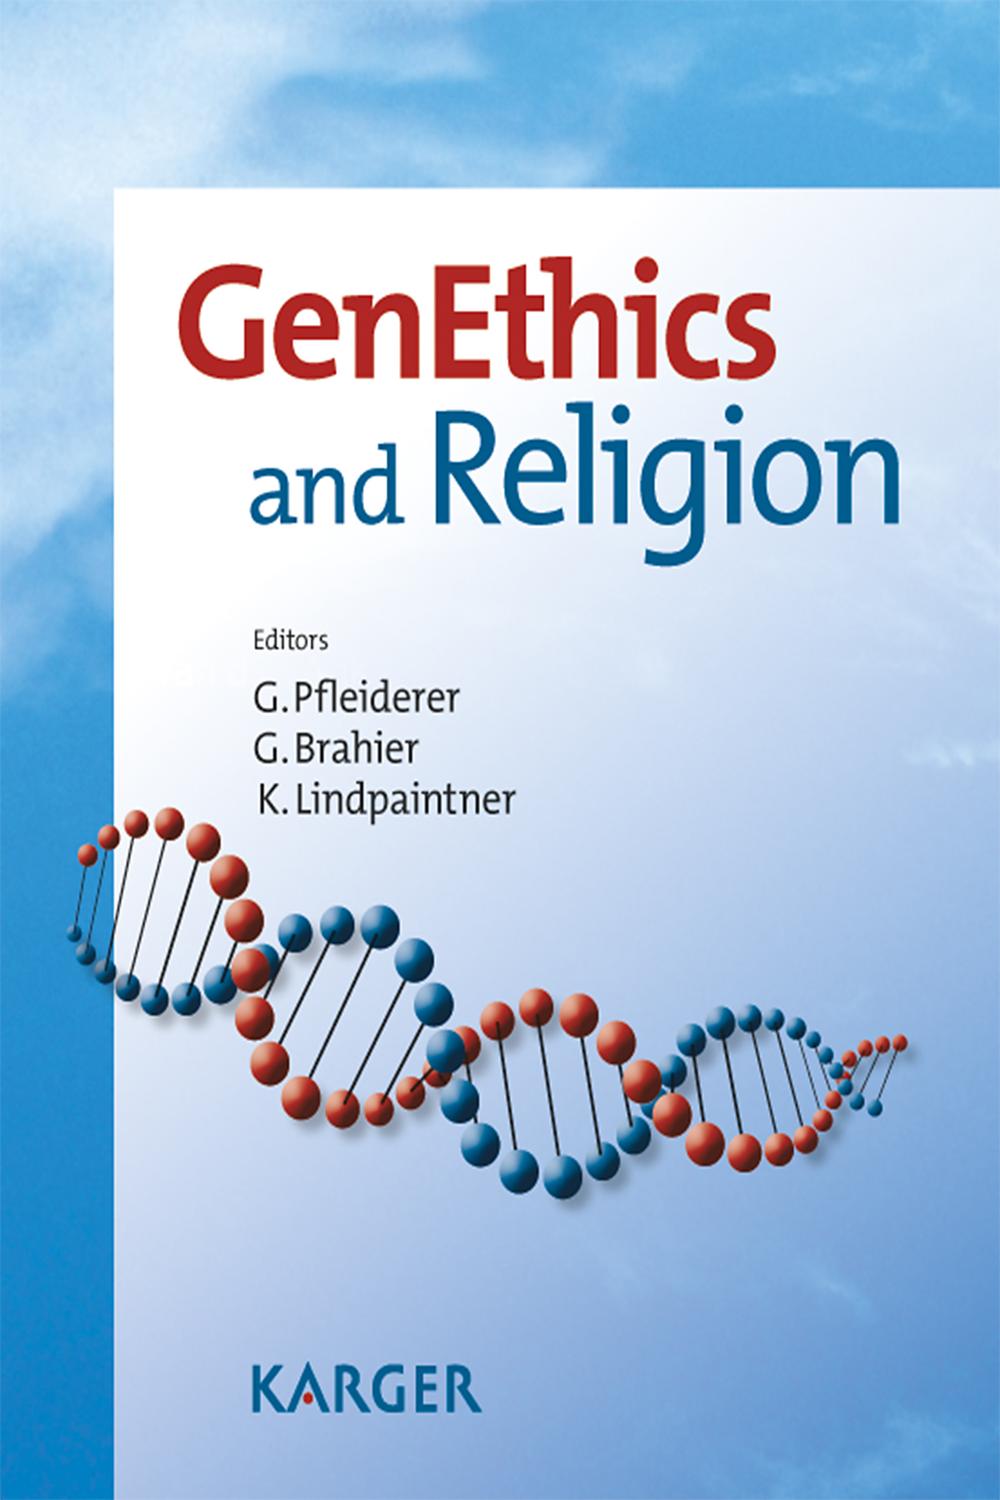 GenEthics and Religion - G. Pfleiderer, G. Brahier, K. Lindpaintner